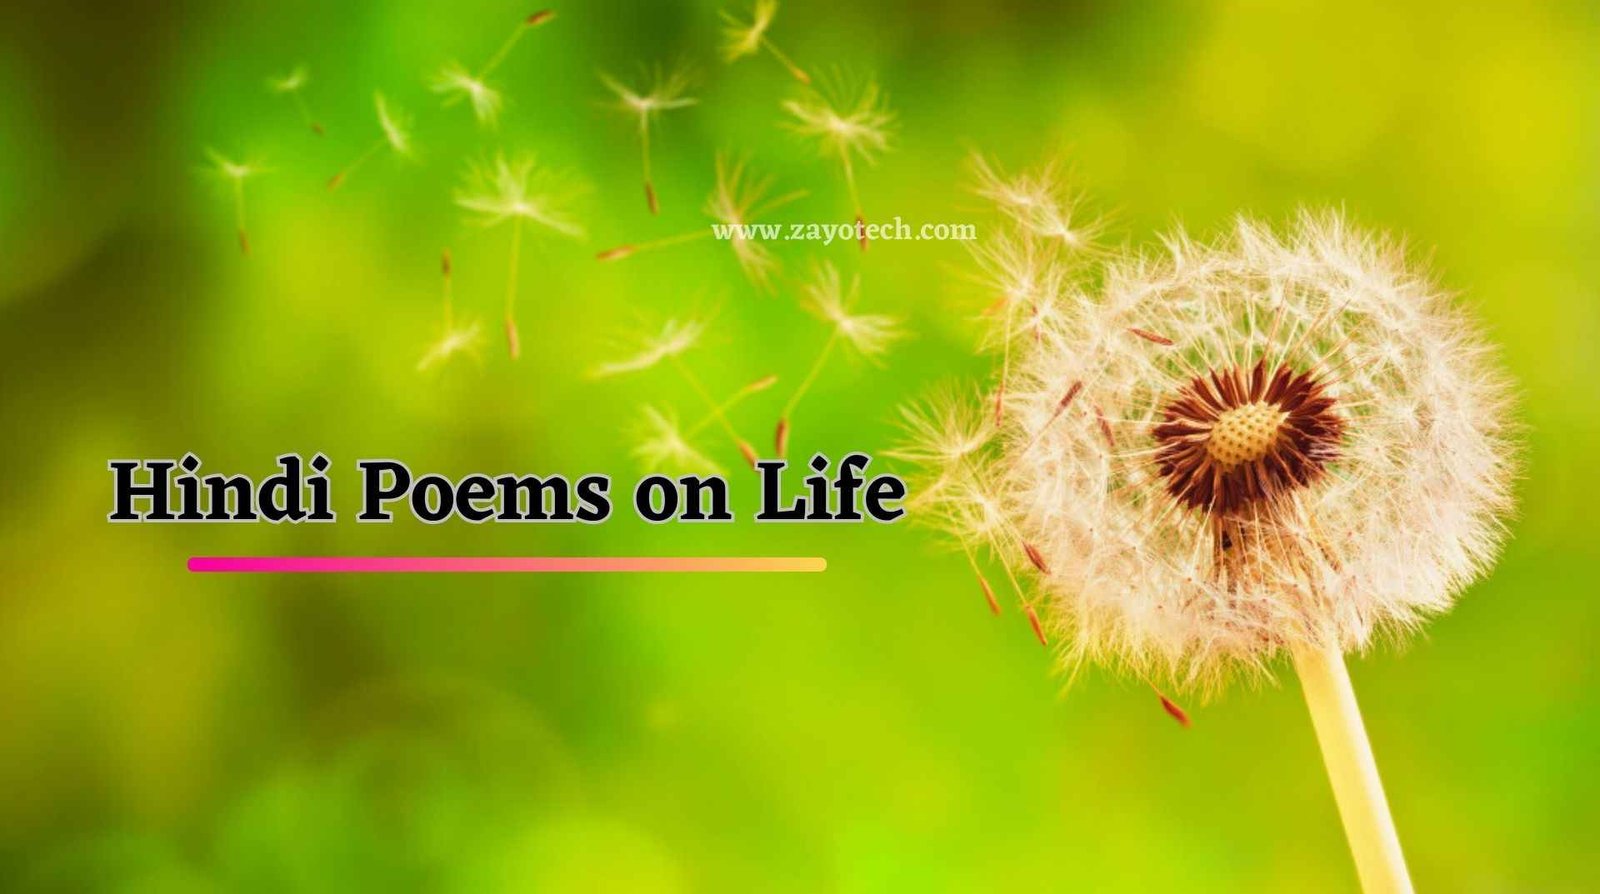 Poem on Life